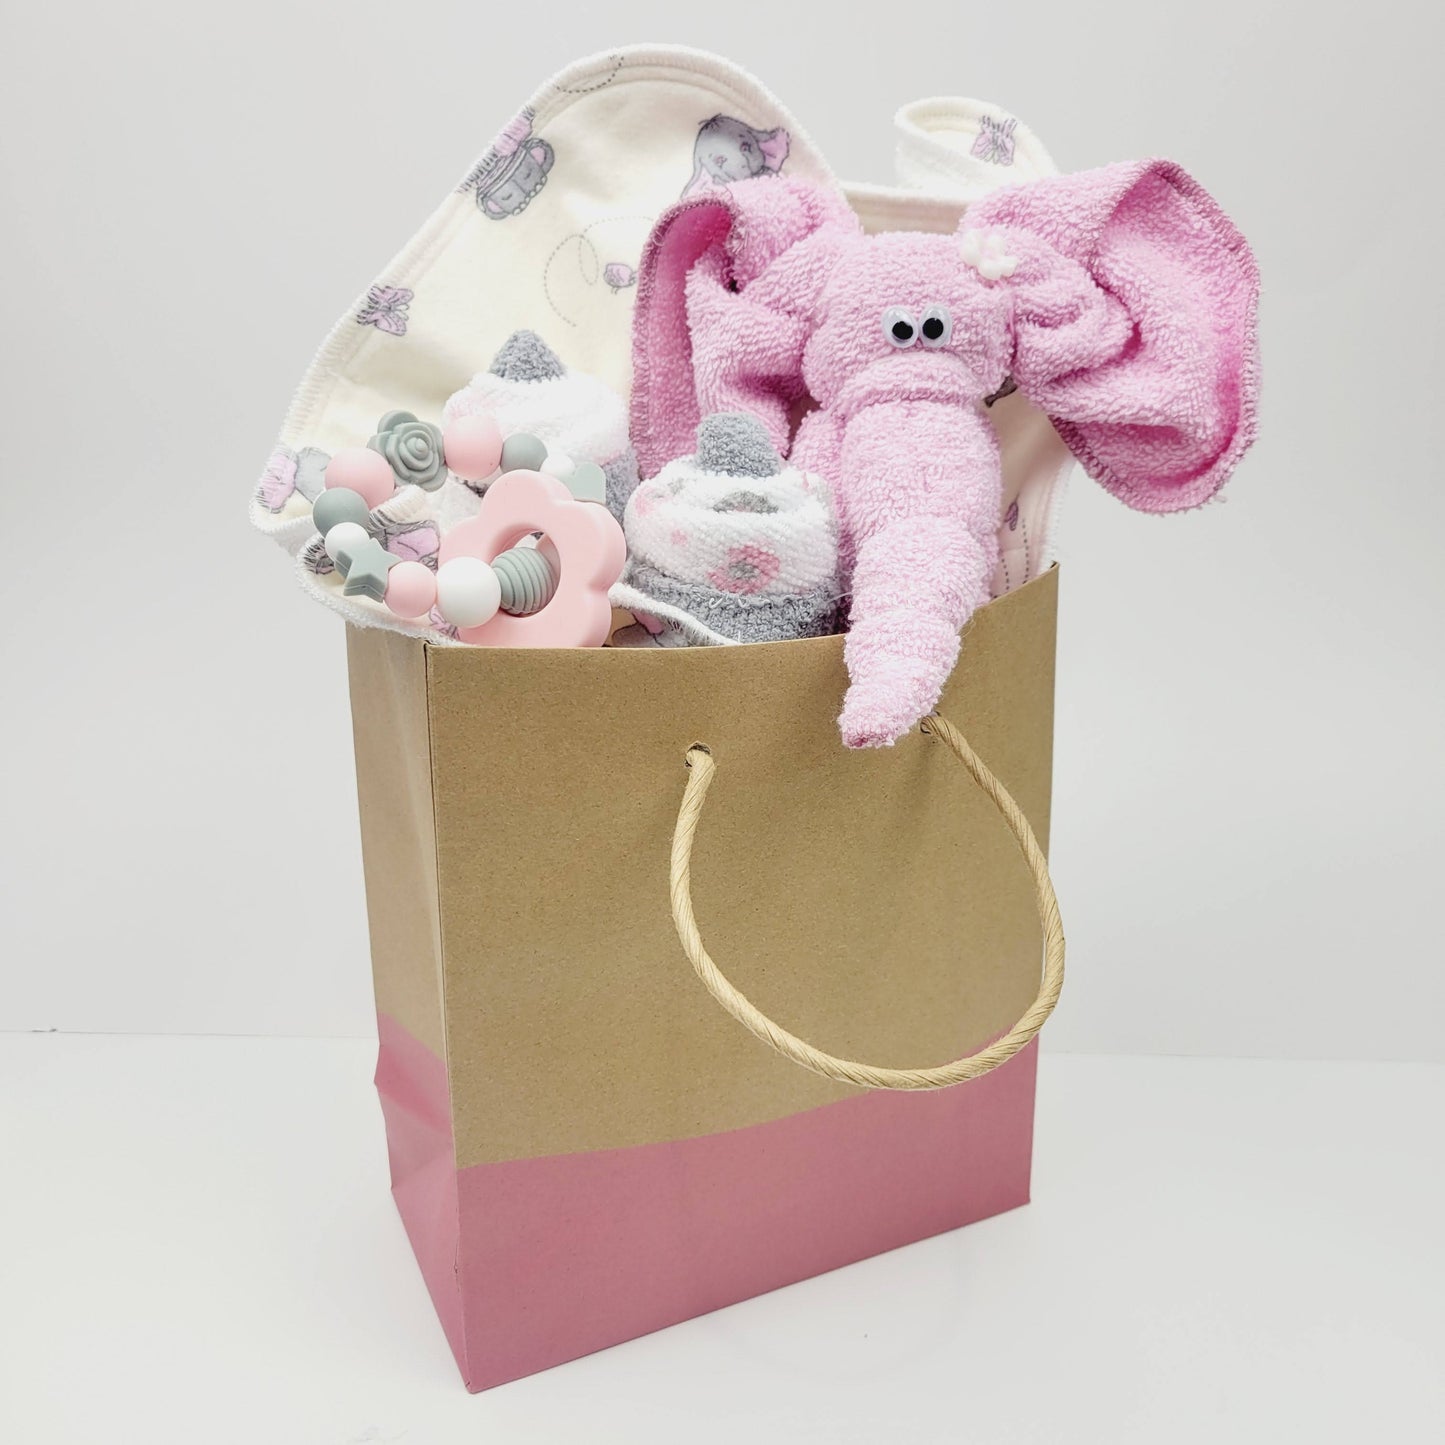 Ensemble cadeau pour babyshower dans un sac cadeau avec la bas du sac rose. On y retrouve un piqué, un jouet de dentition avec une fleur. Un éléphant et un cupcake fait de débarbouillettes.